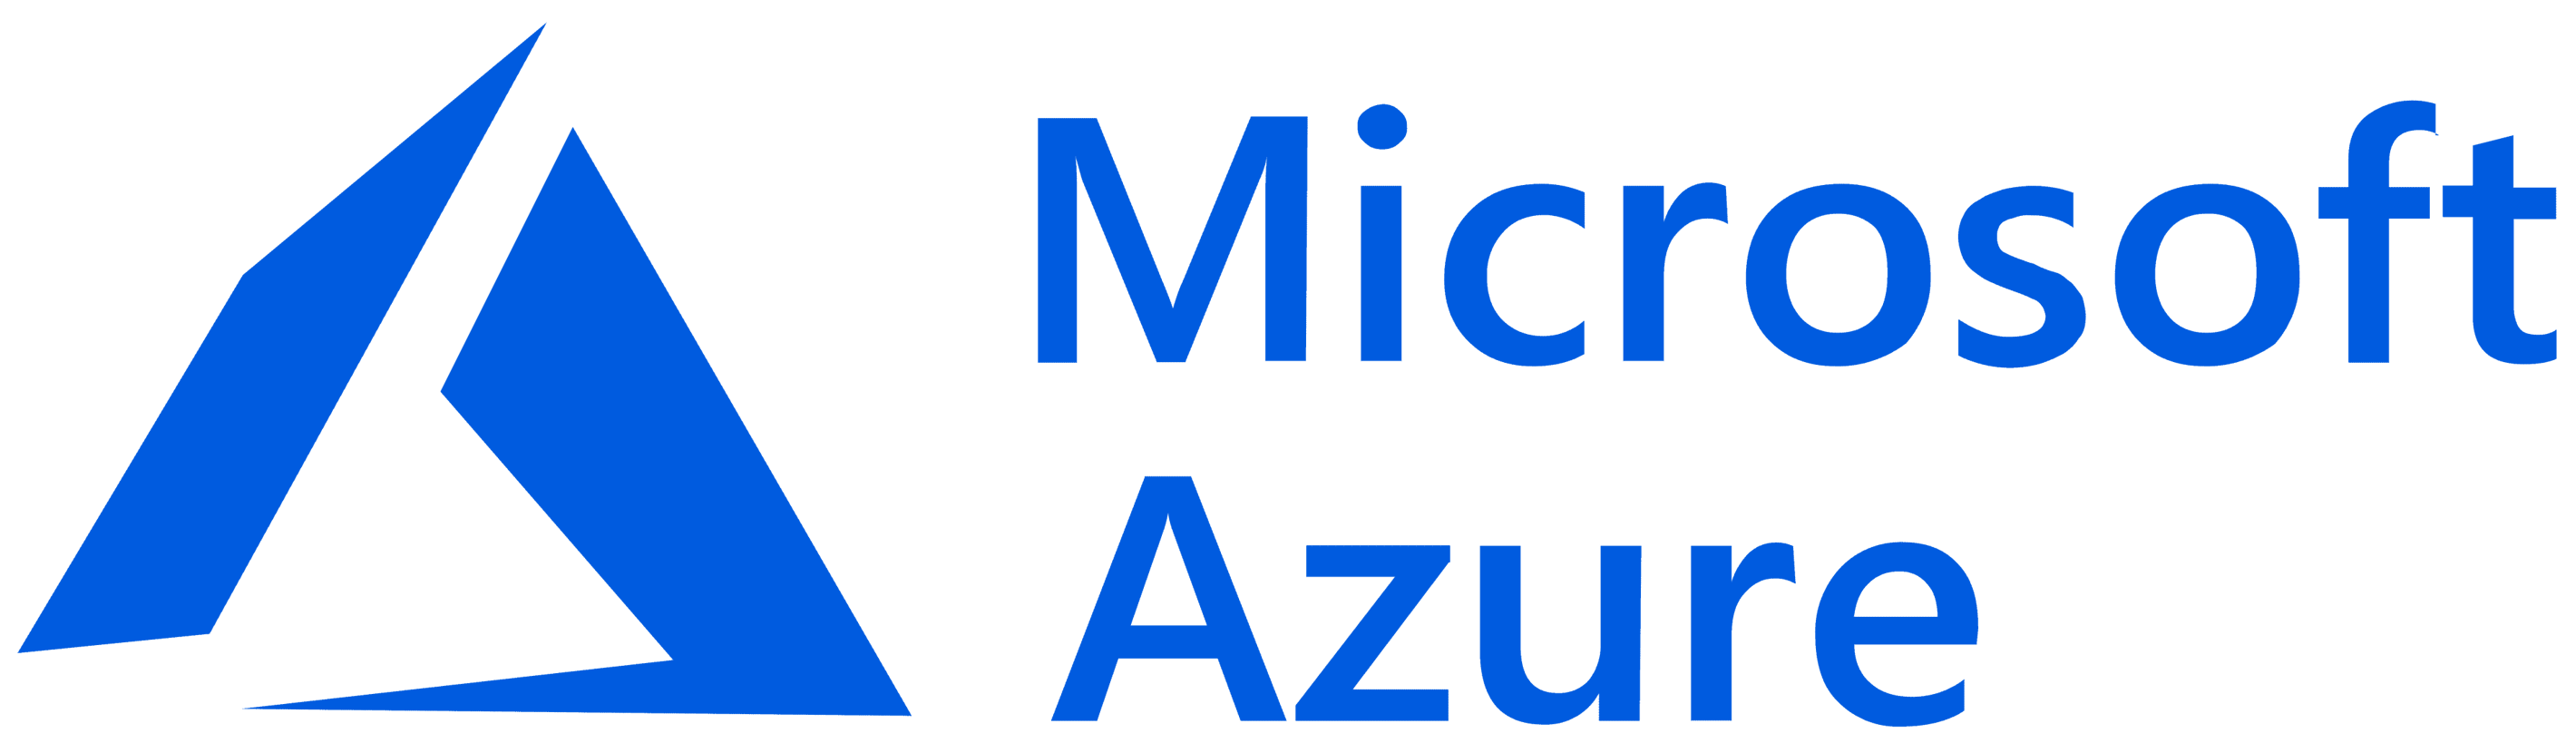 MicrosoftAzureLogo